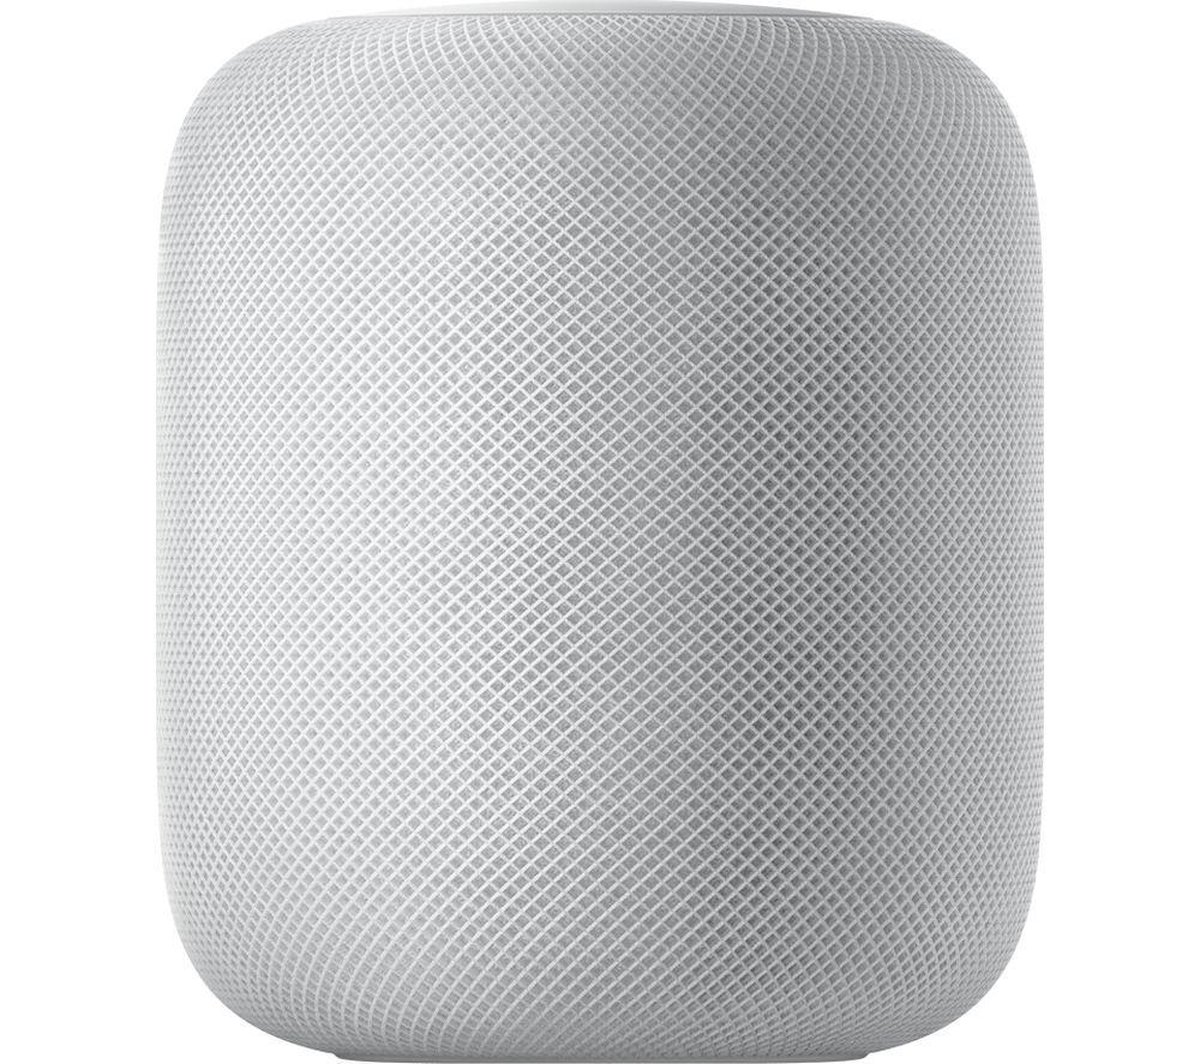 Apple HomePod White - Apple